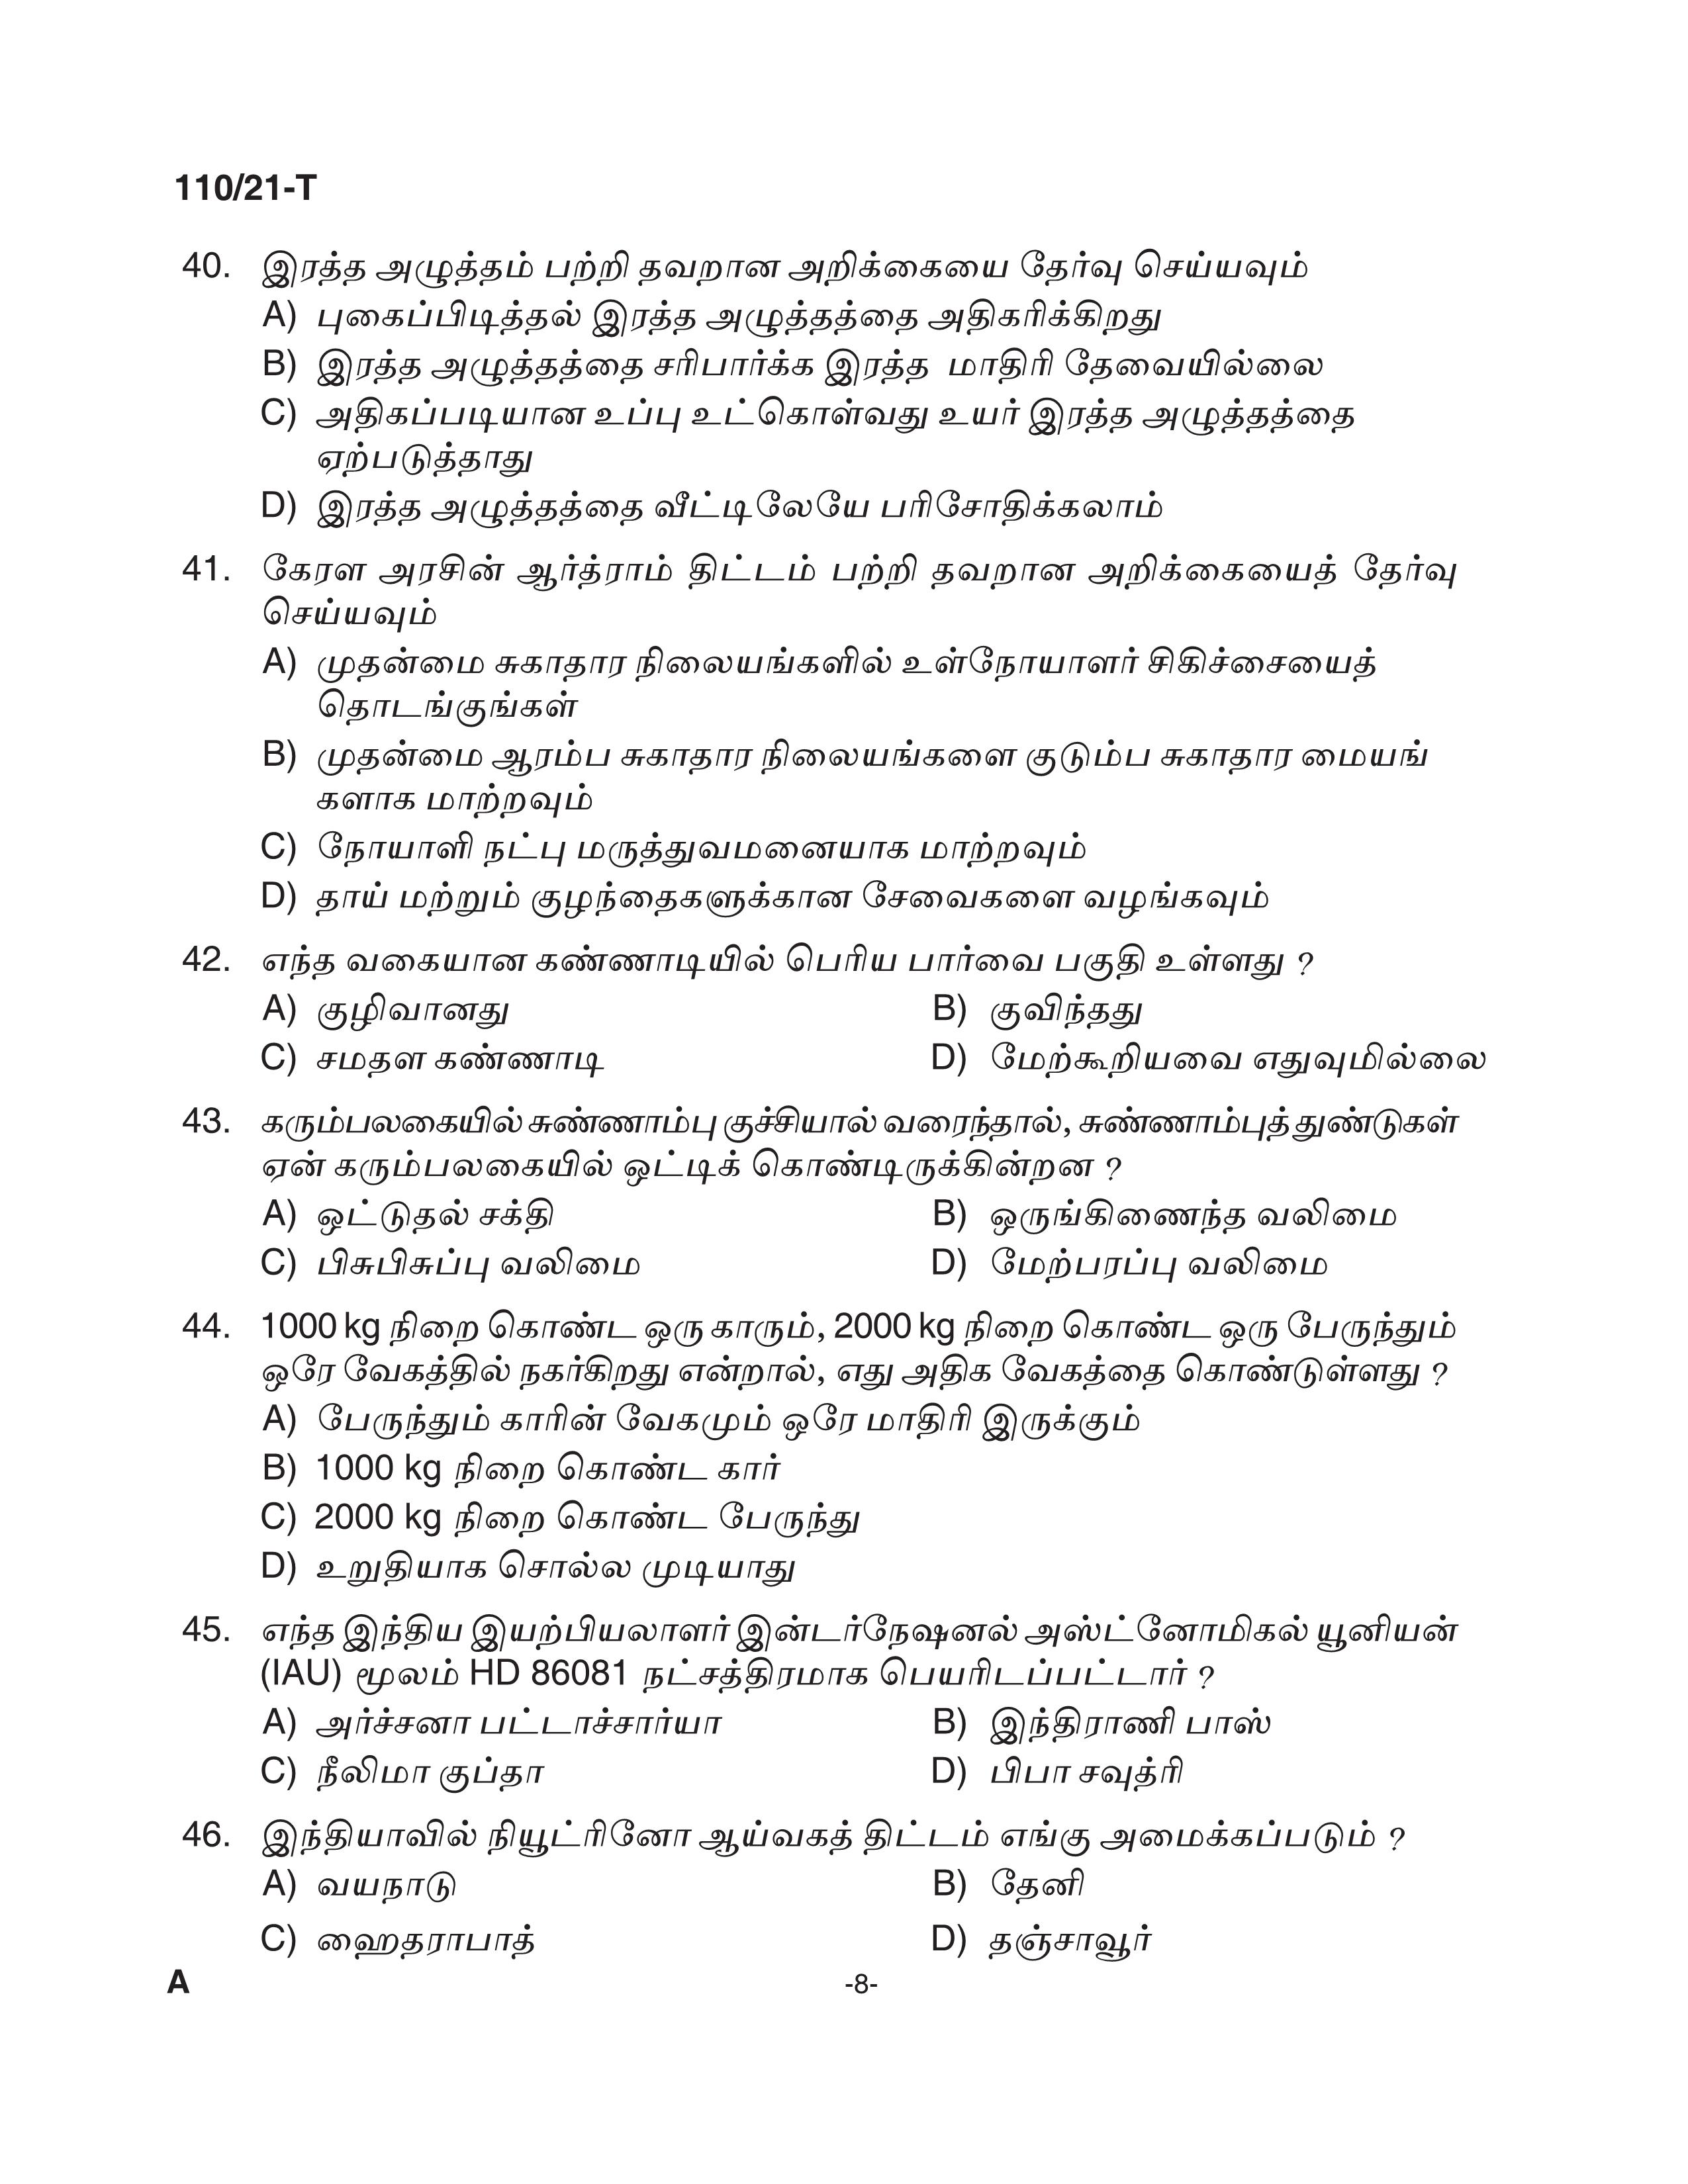 KPSC Assistant Grade II Sergeant Tamil Exam 2021 Code 1102021 T 7